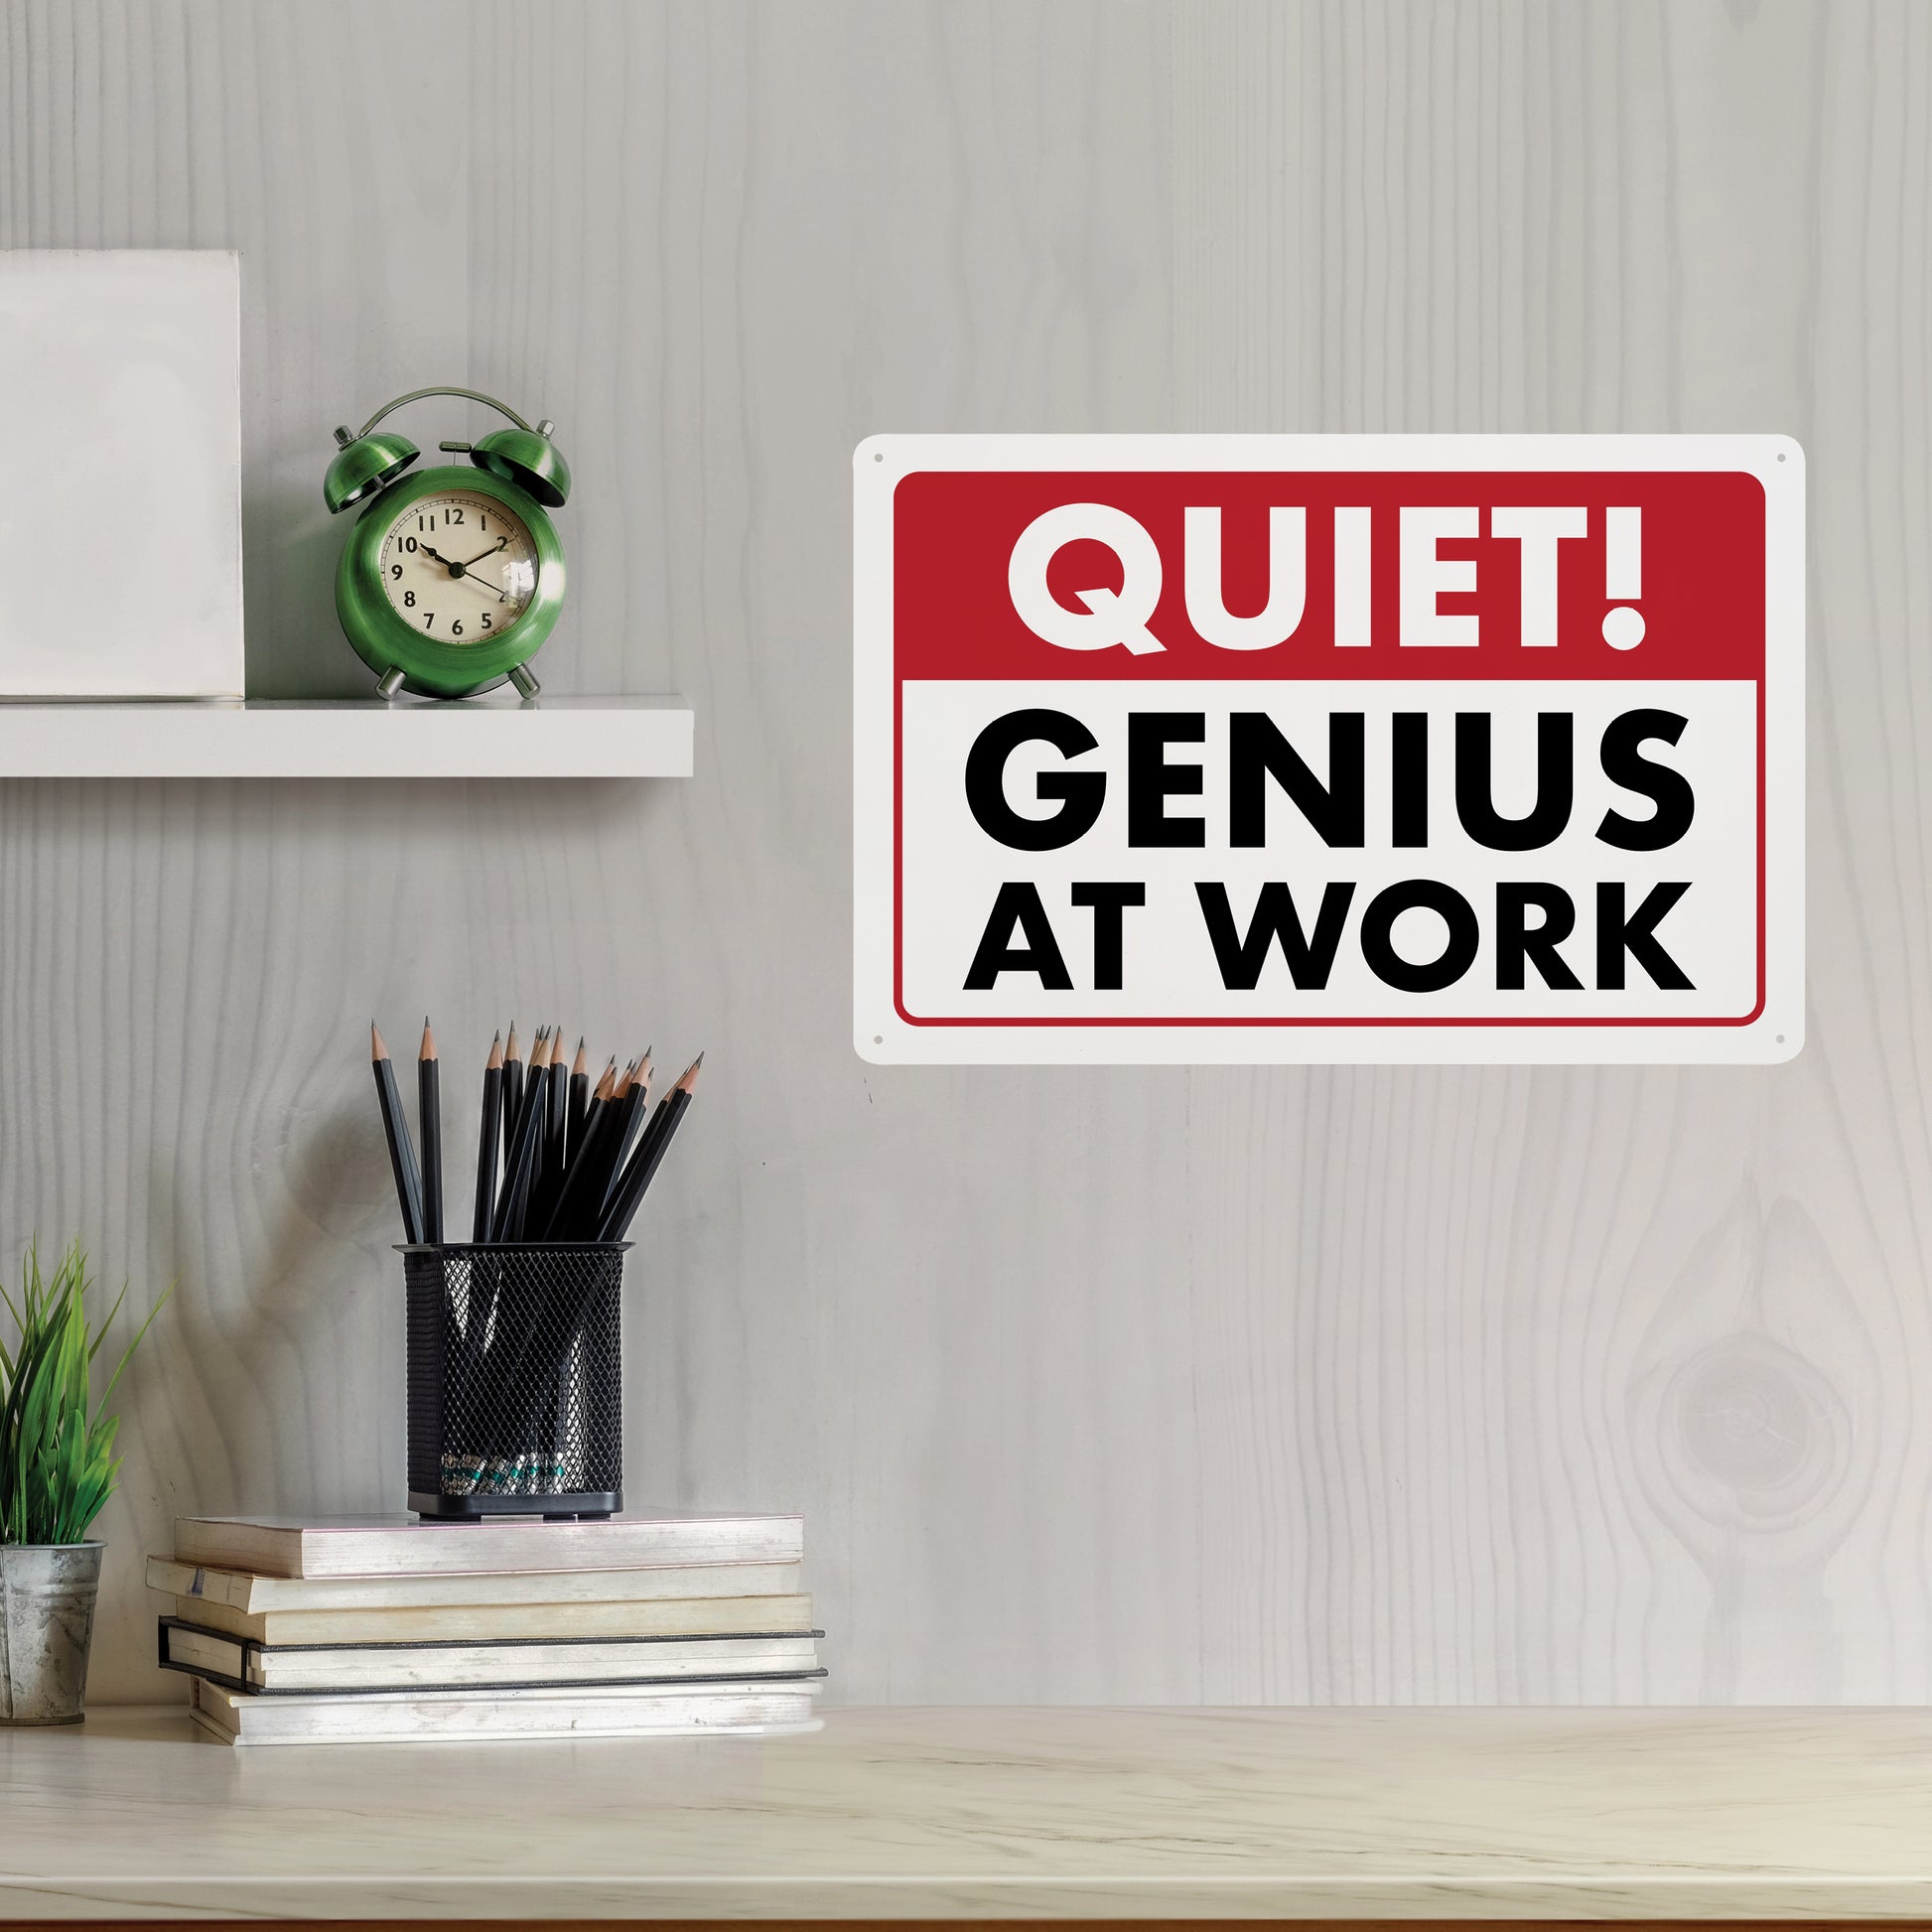 shhh quiet genius at work